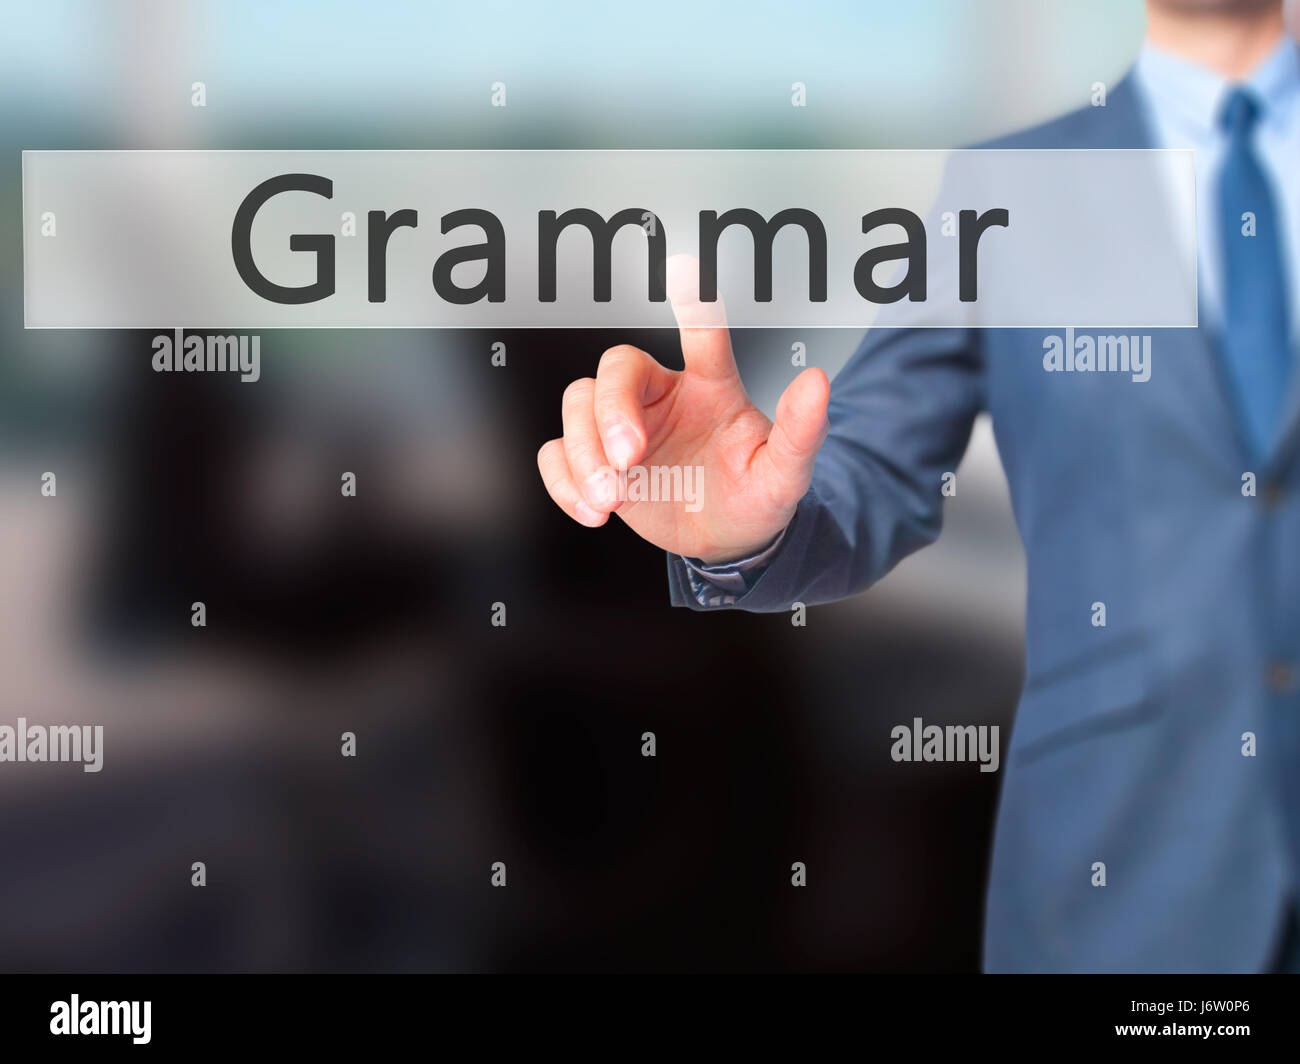 Grammatica - Imprenditore mano premendo il pulsante sul touch screen interfaccia. Business, tecnologia internet concetto. Stock Photo Foto Stock